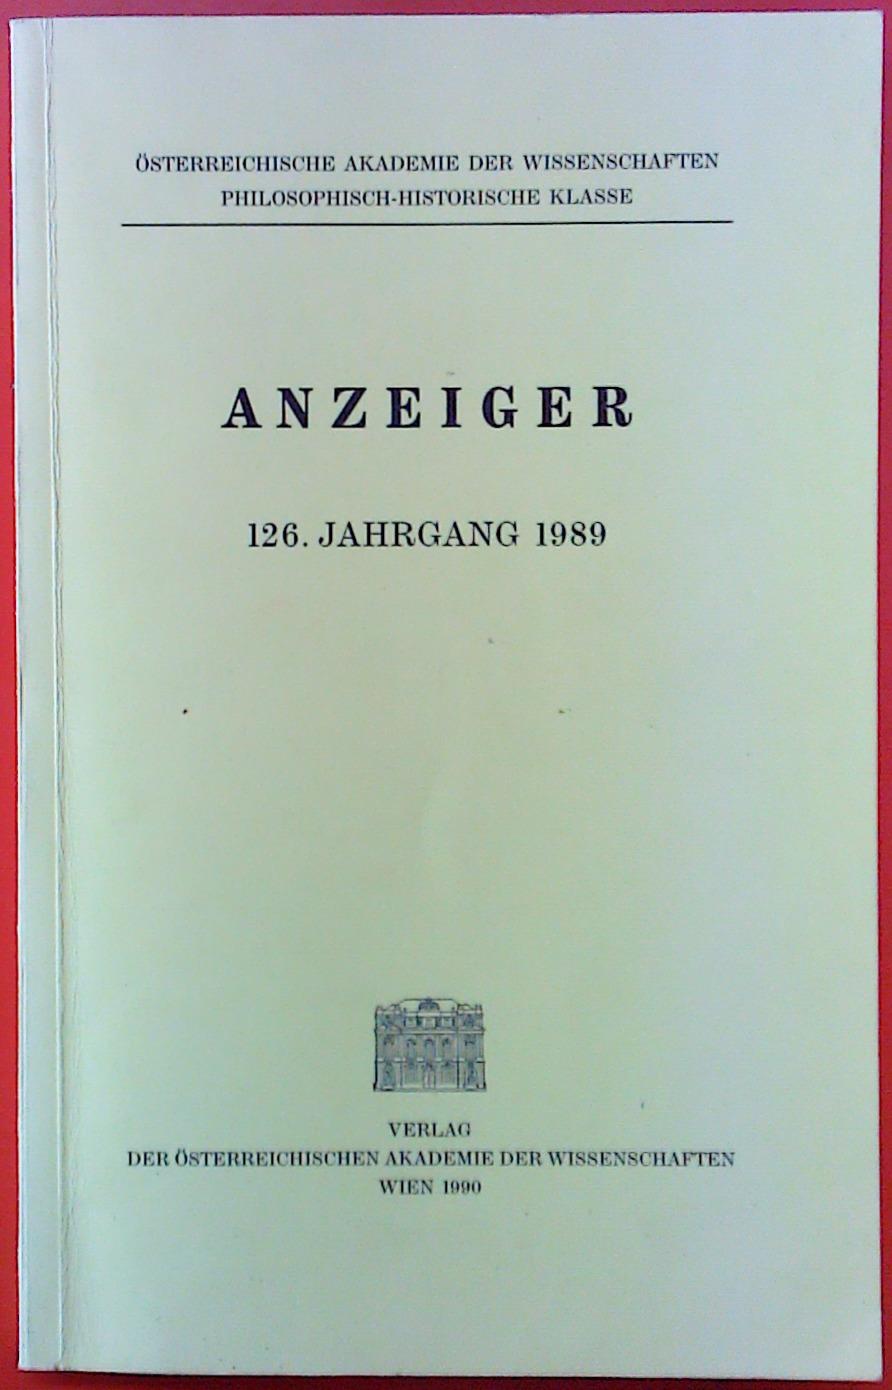 ANZEIGER 126. Jahrgang 1989. Österreichische Akademie der Wissenschaften, philosophisch-historische Klasse. - Autorenkollektiv